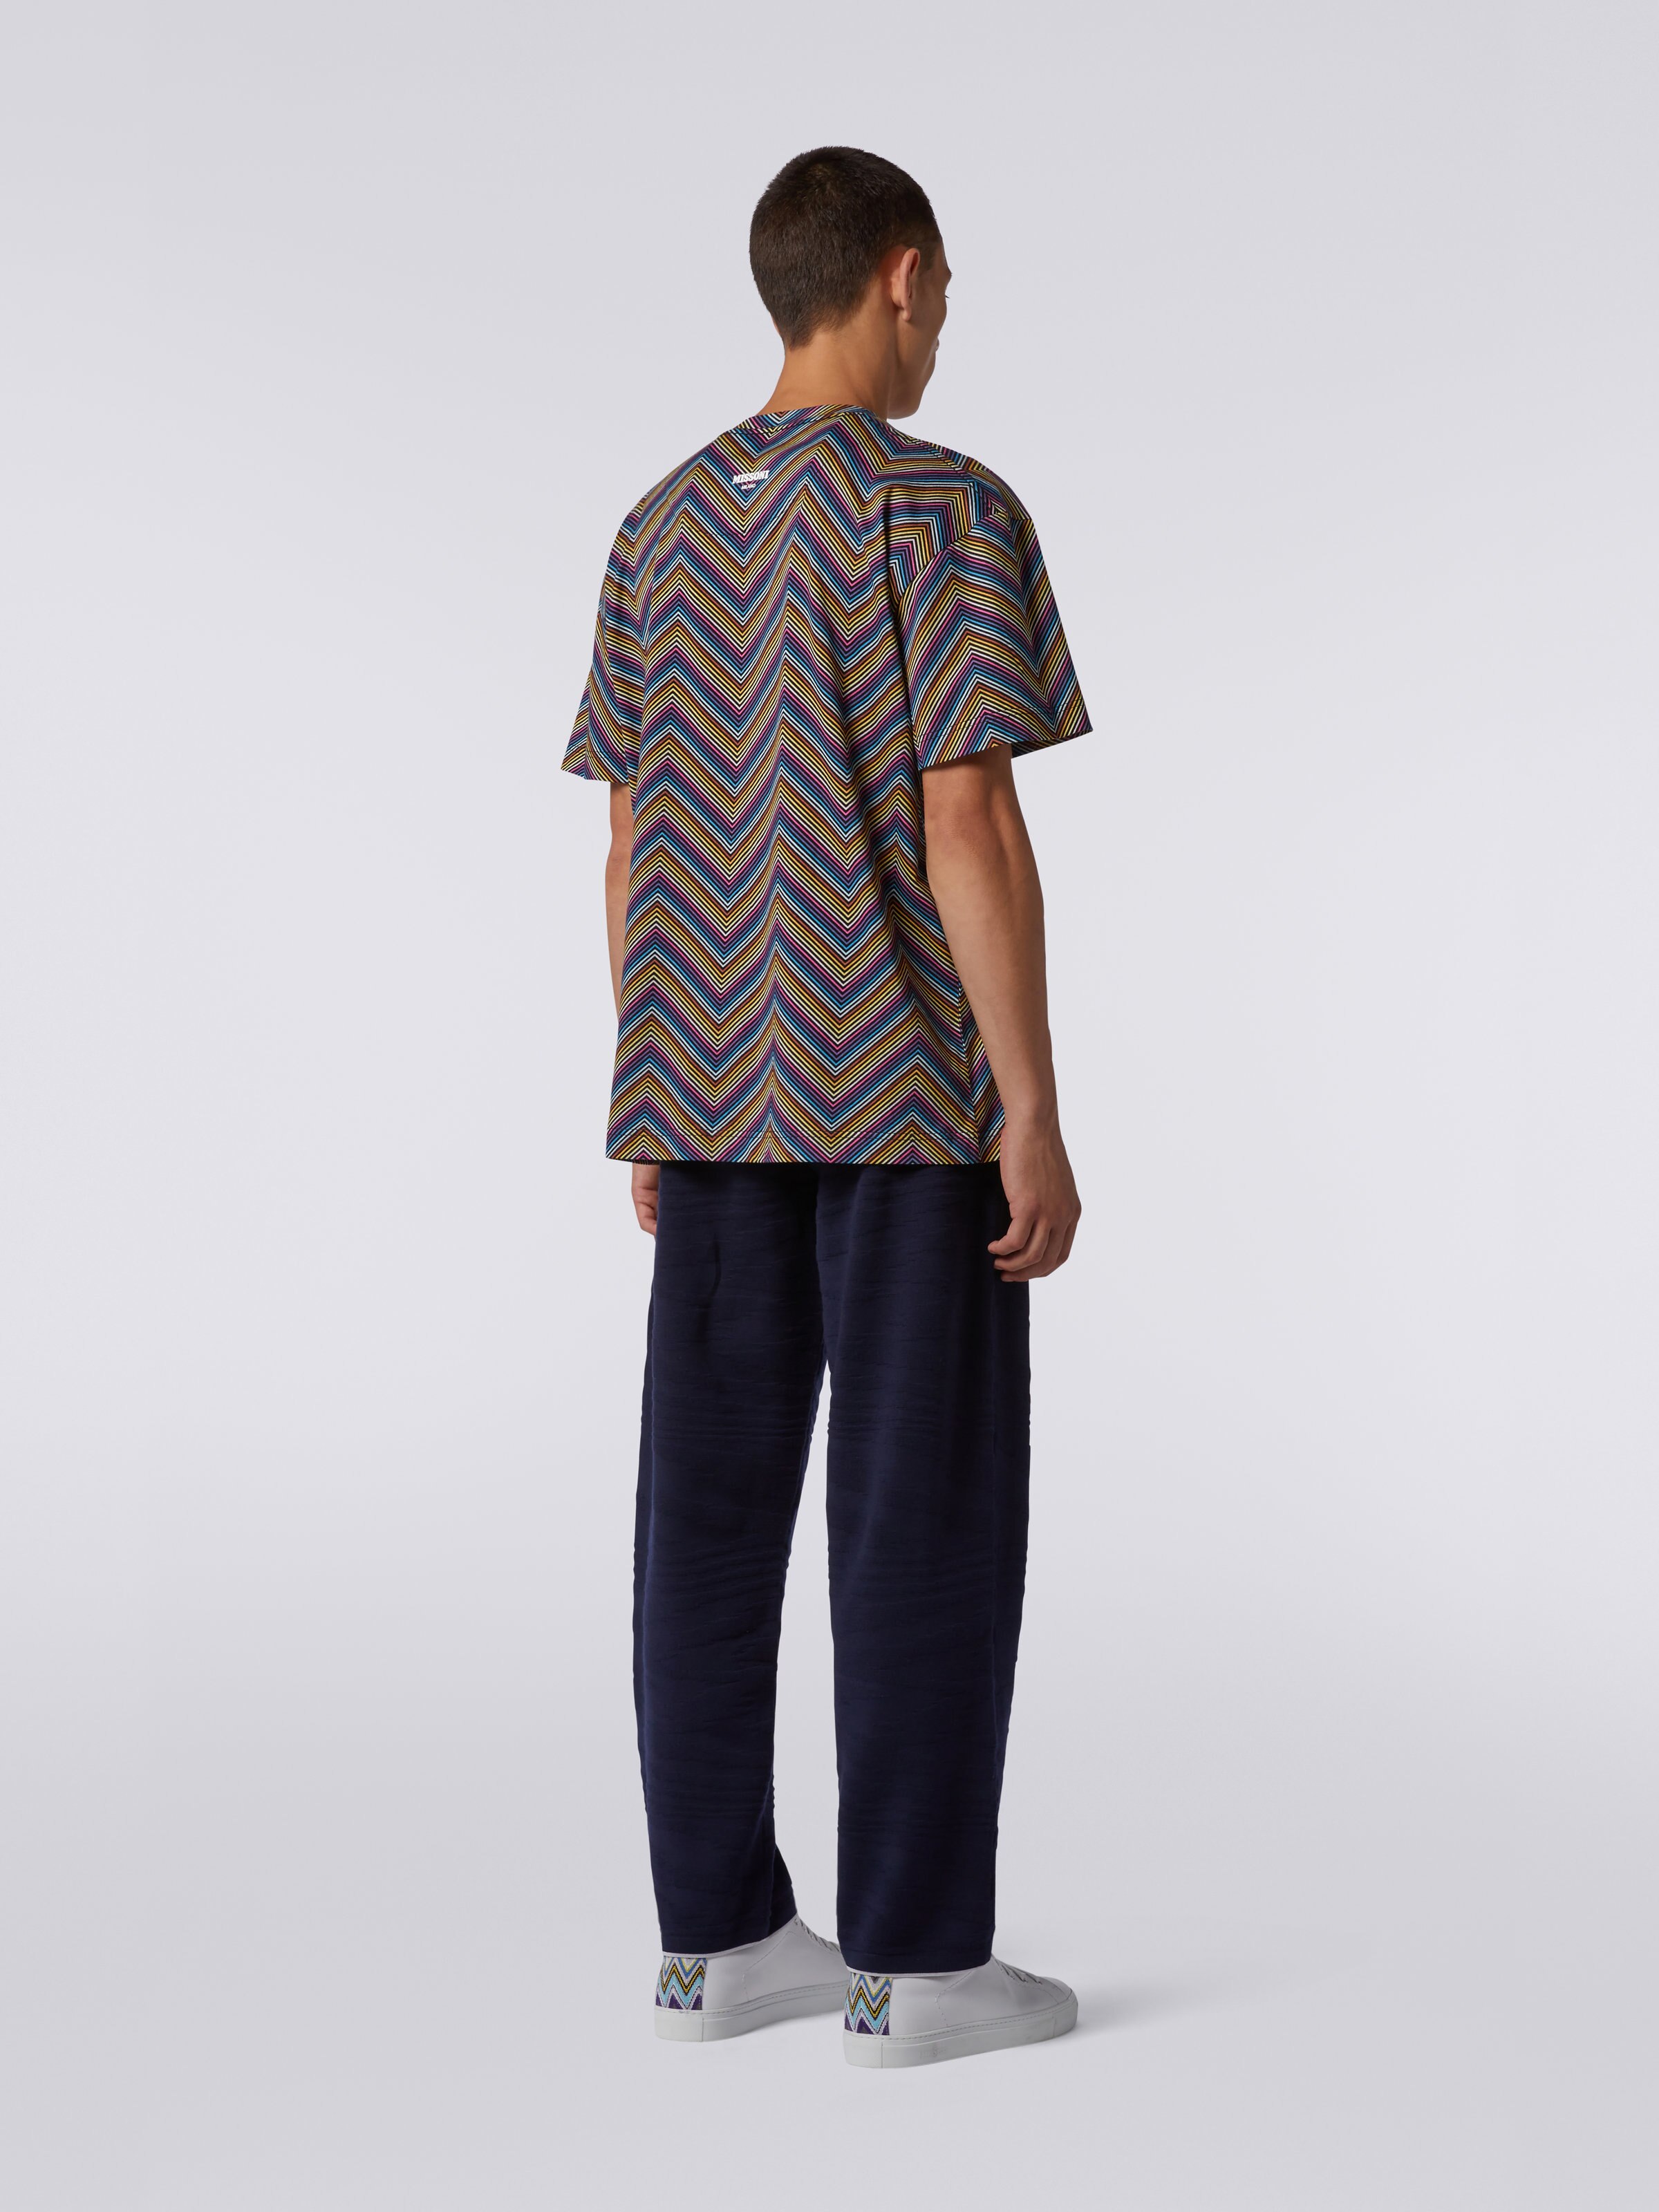 Camiseta de cuello redondo de algodón en zigzag integral, Multicolor  - 3